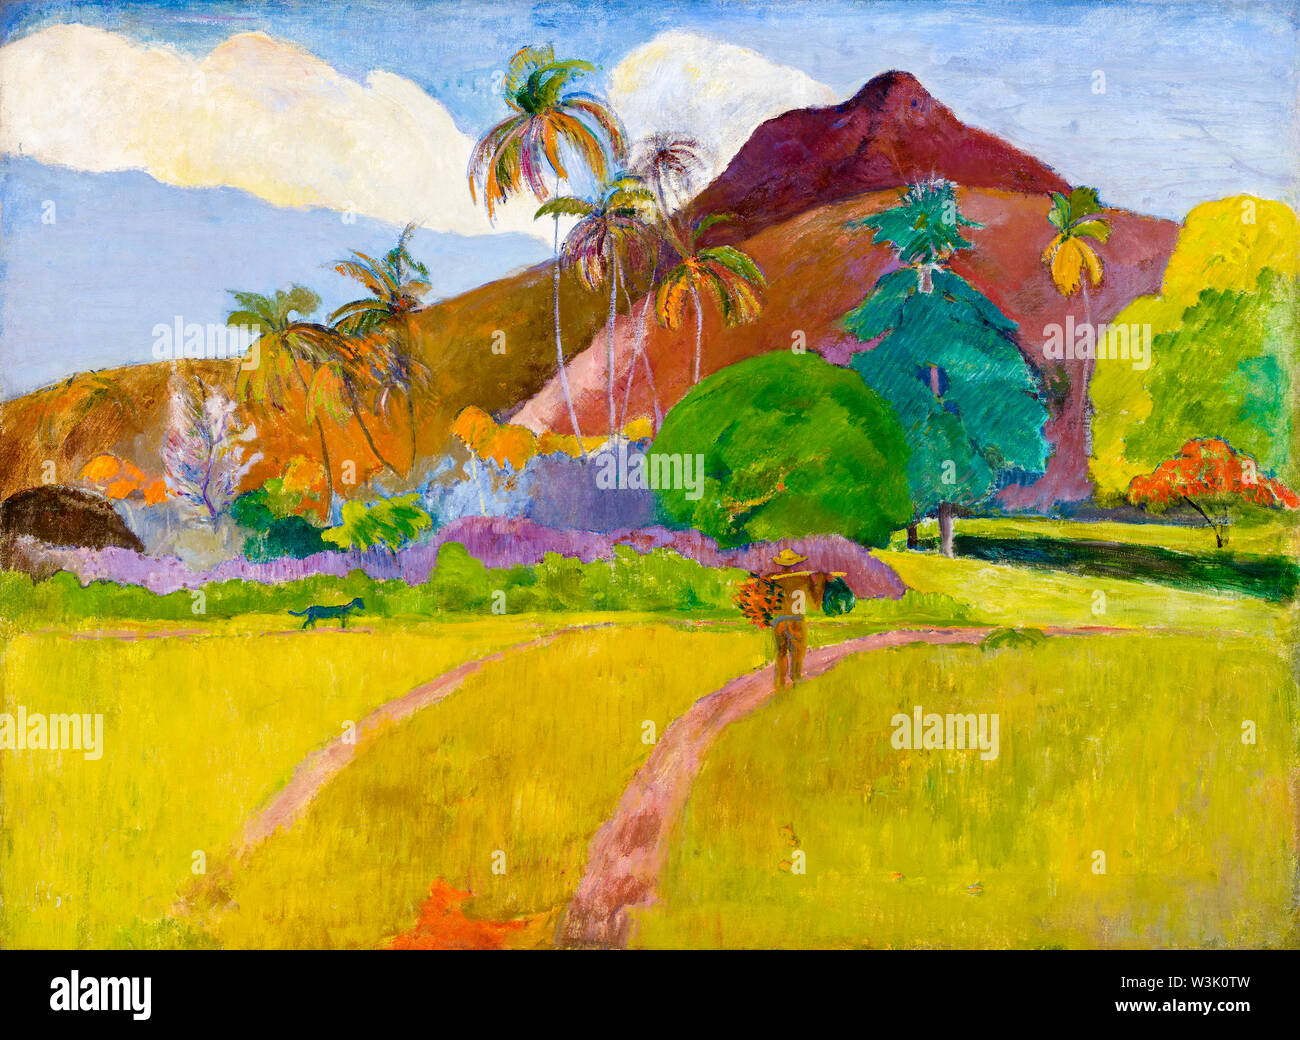 Paul Gauguin, Tahitian Landscape, landscape painting, 1891 Stock Photo